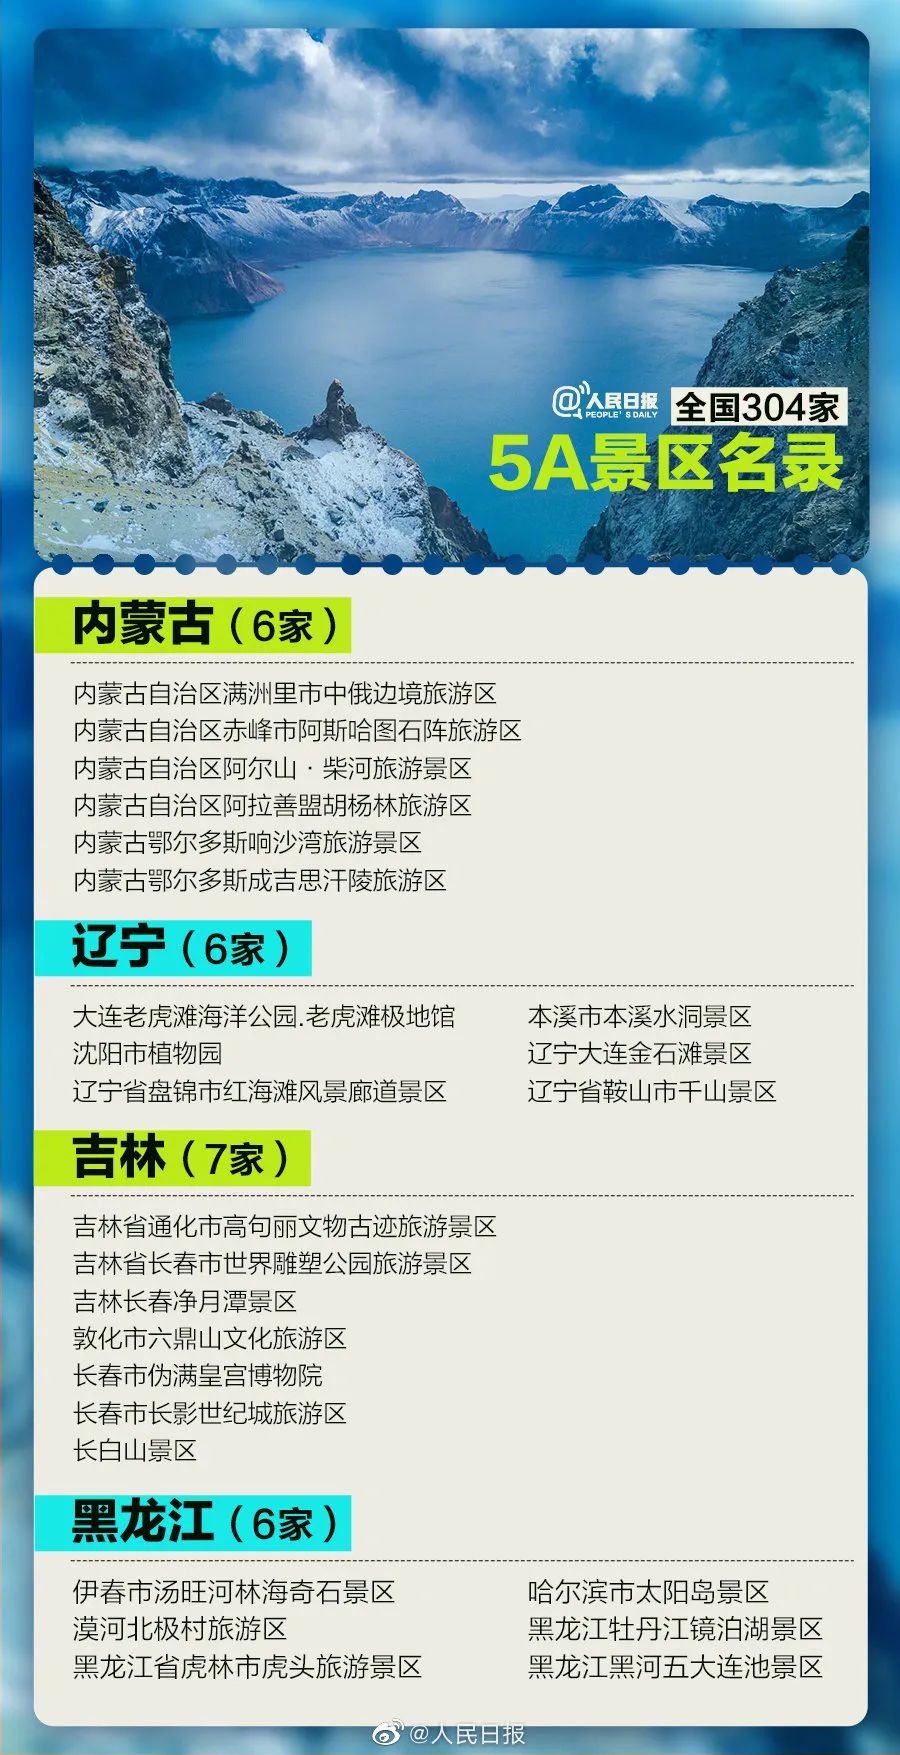 中国旅游日| 国内304家5A景区名单来了！收藏了一起去打卡！